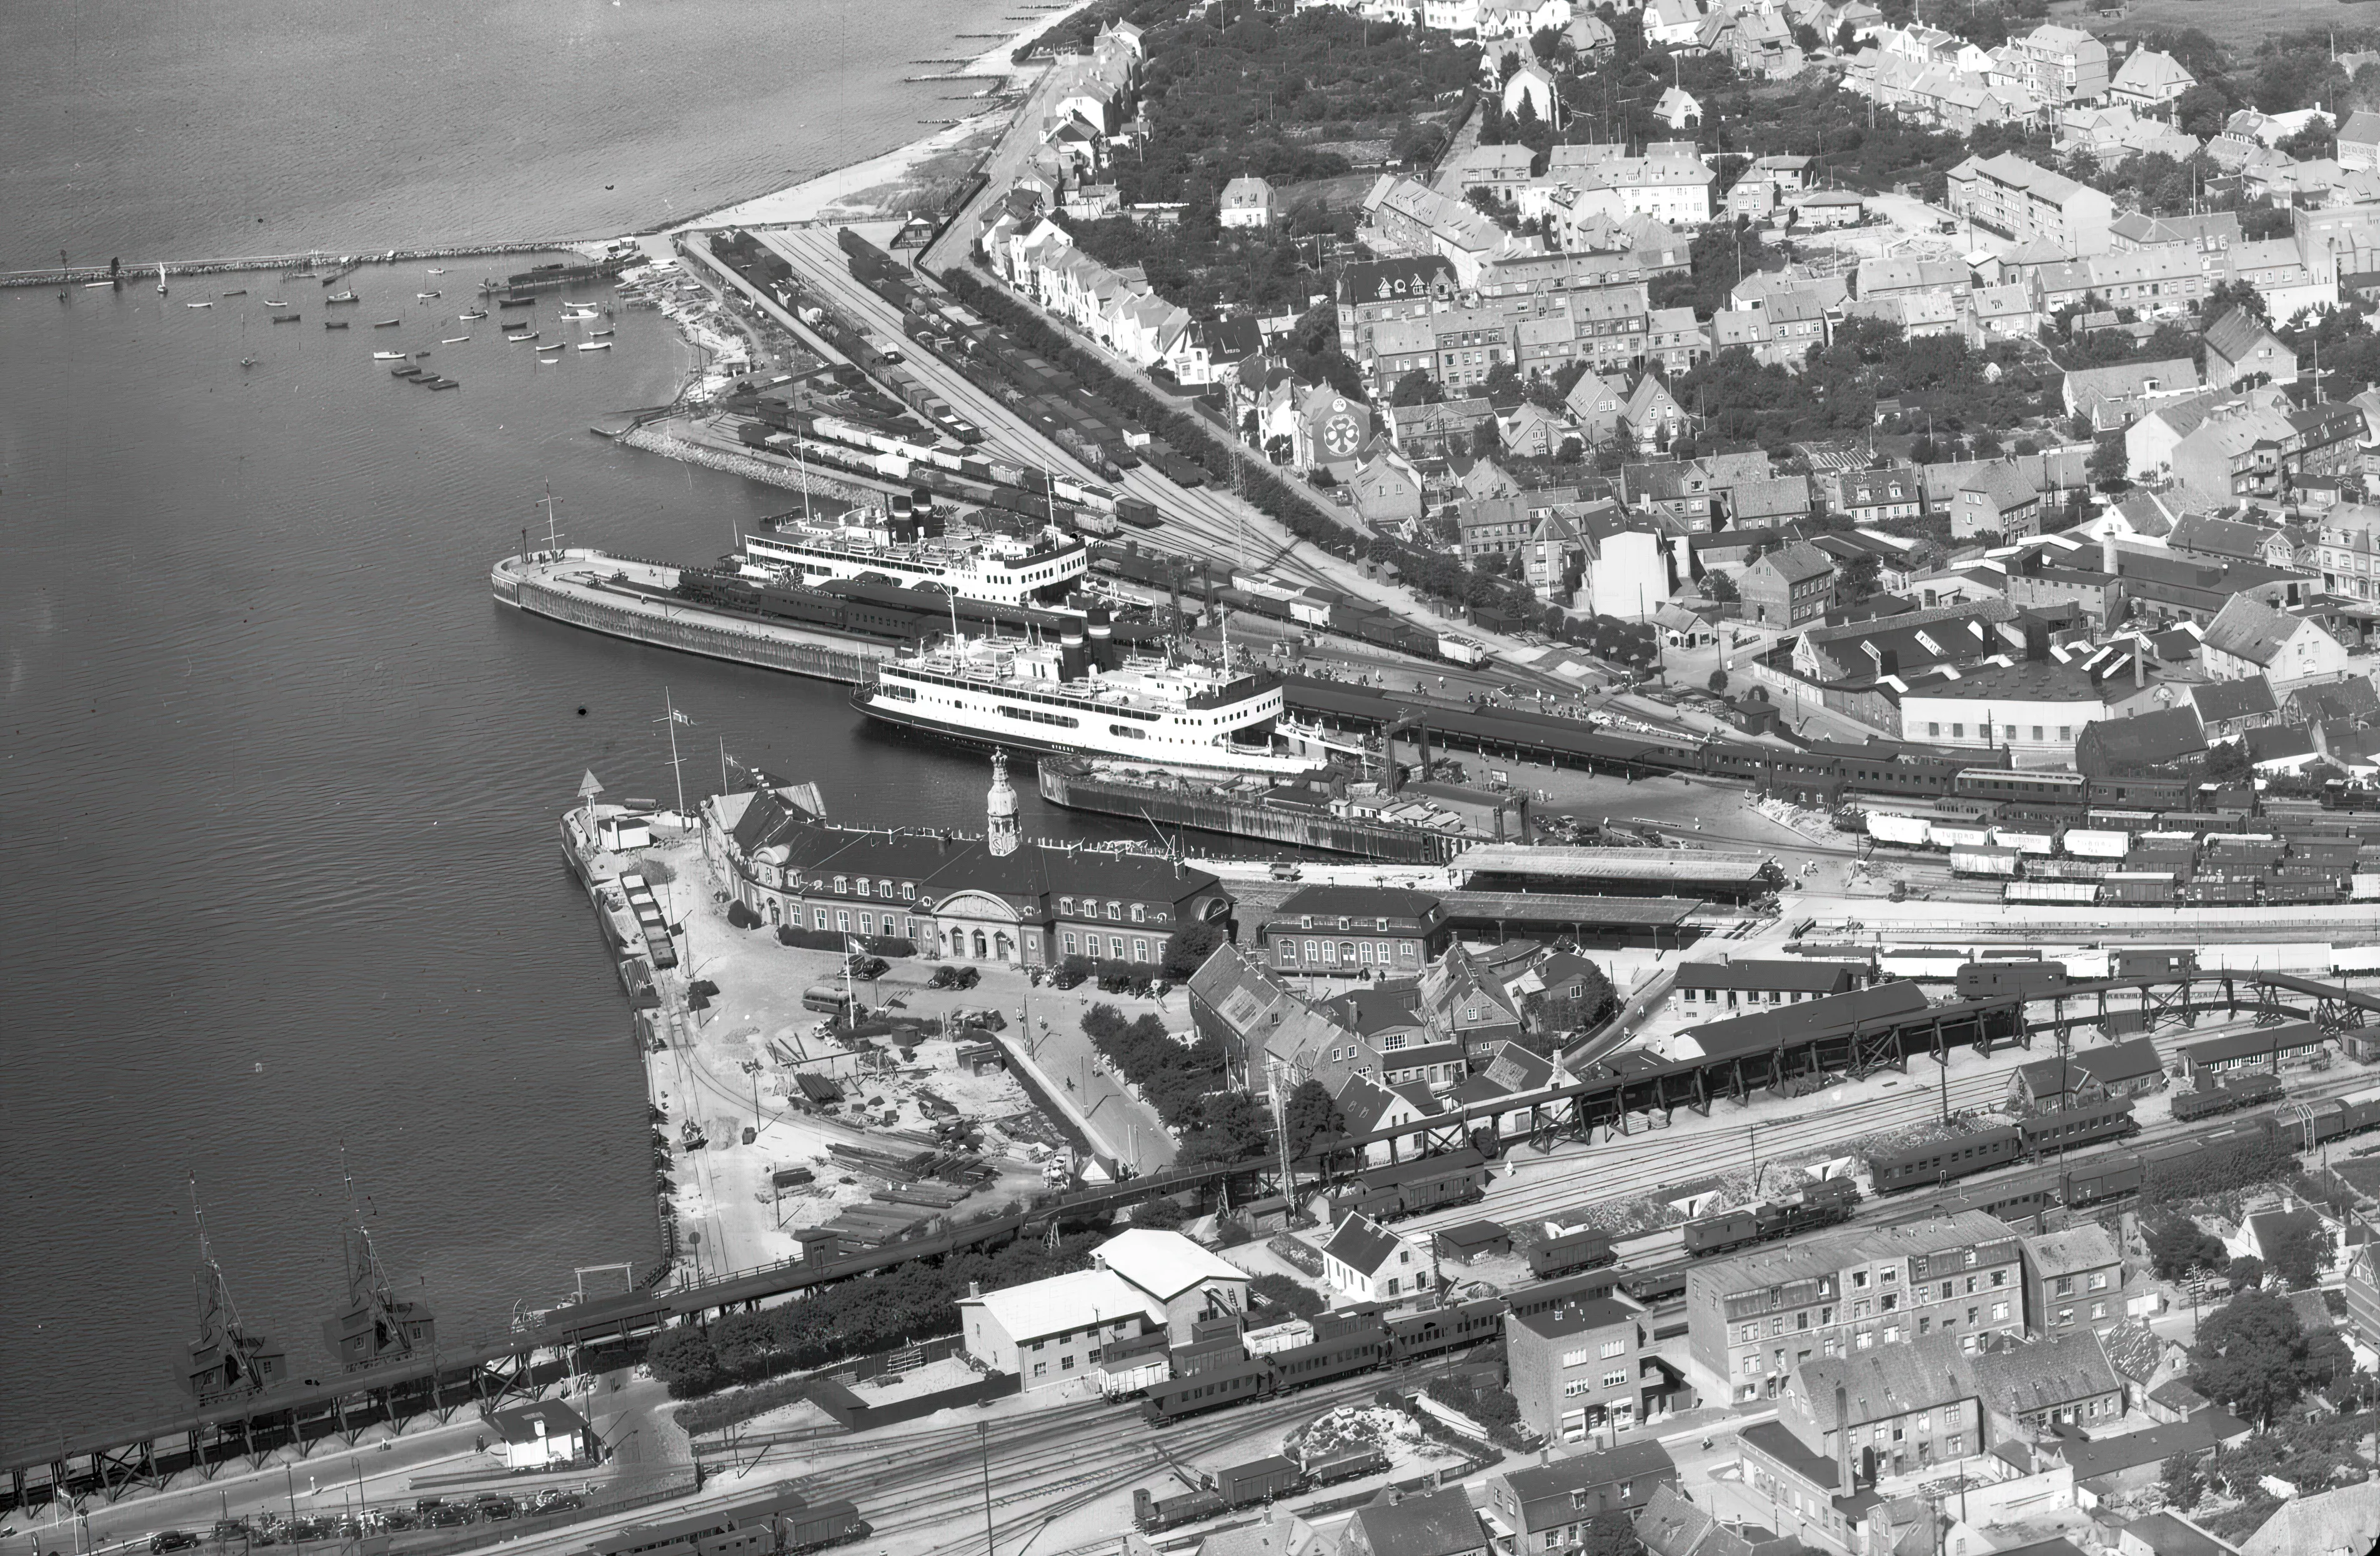 Billede af Korsør Station med færgen "Nyborg" i havn.